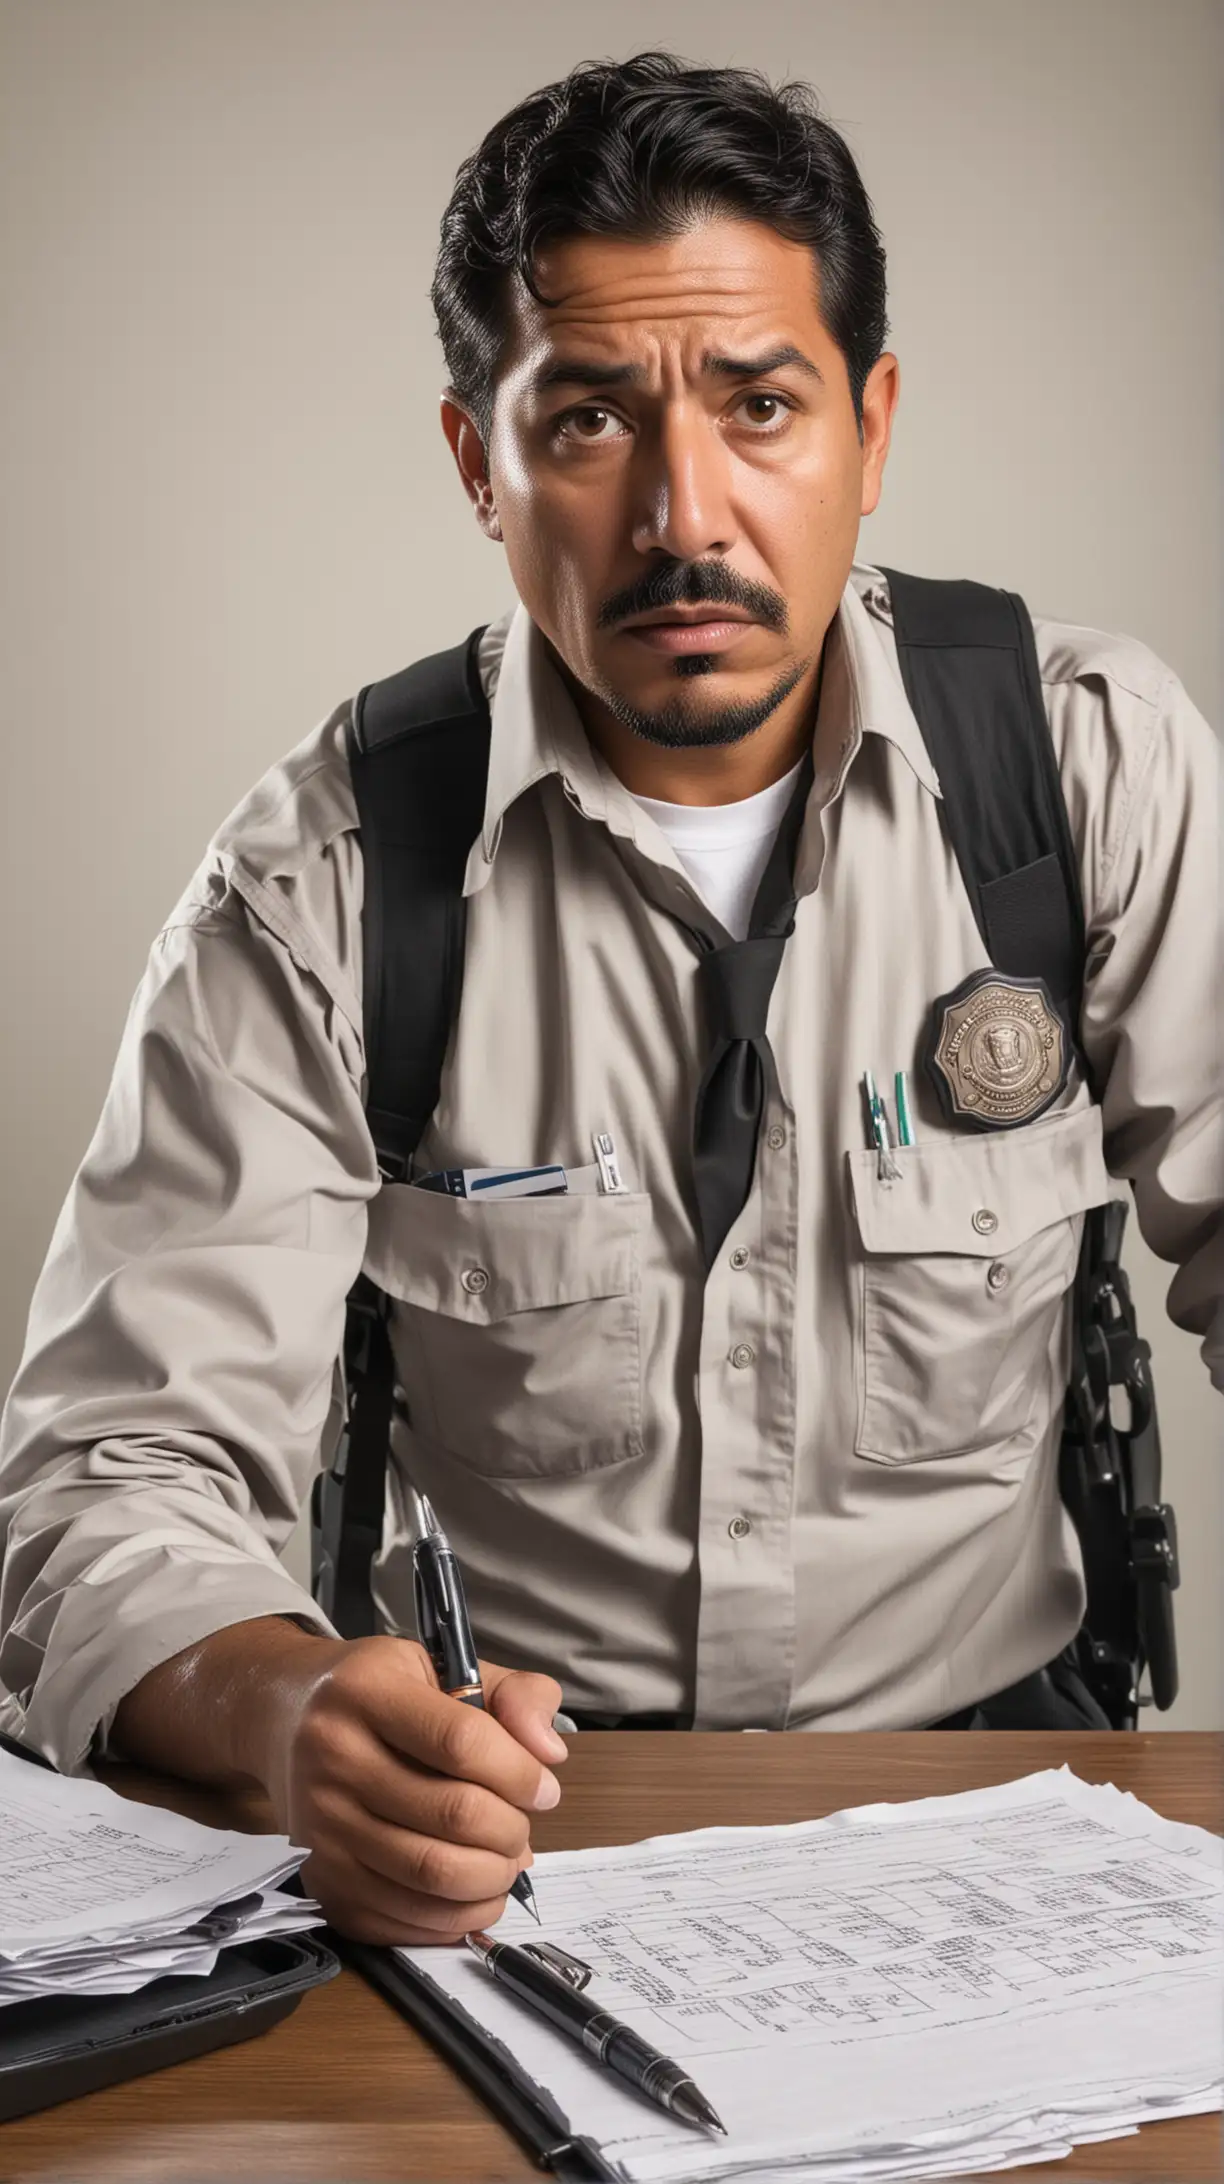 genera una imagen de un guardia de seguridad de aspecto mexicano de 40 años, frustrado por estar generando reportes con pluma y papel